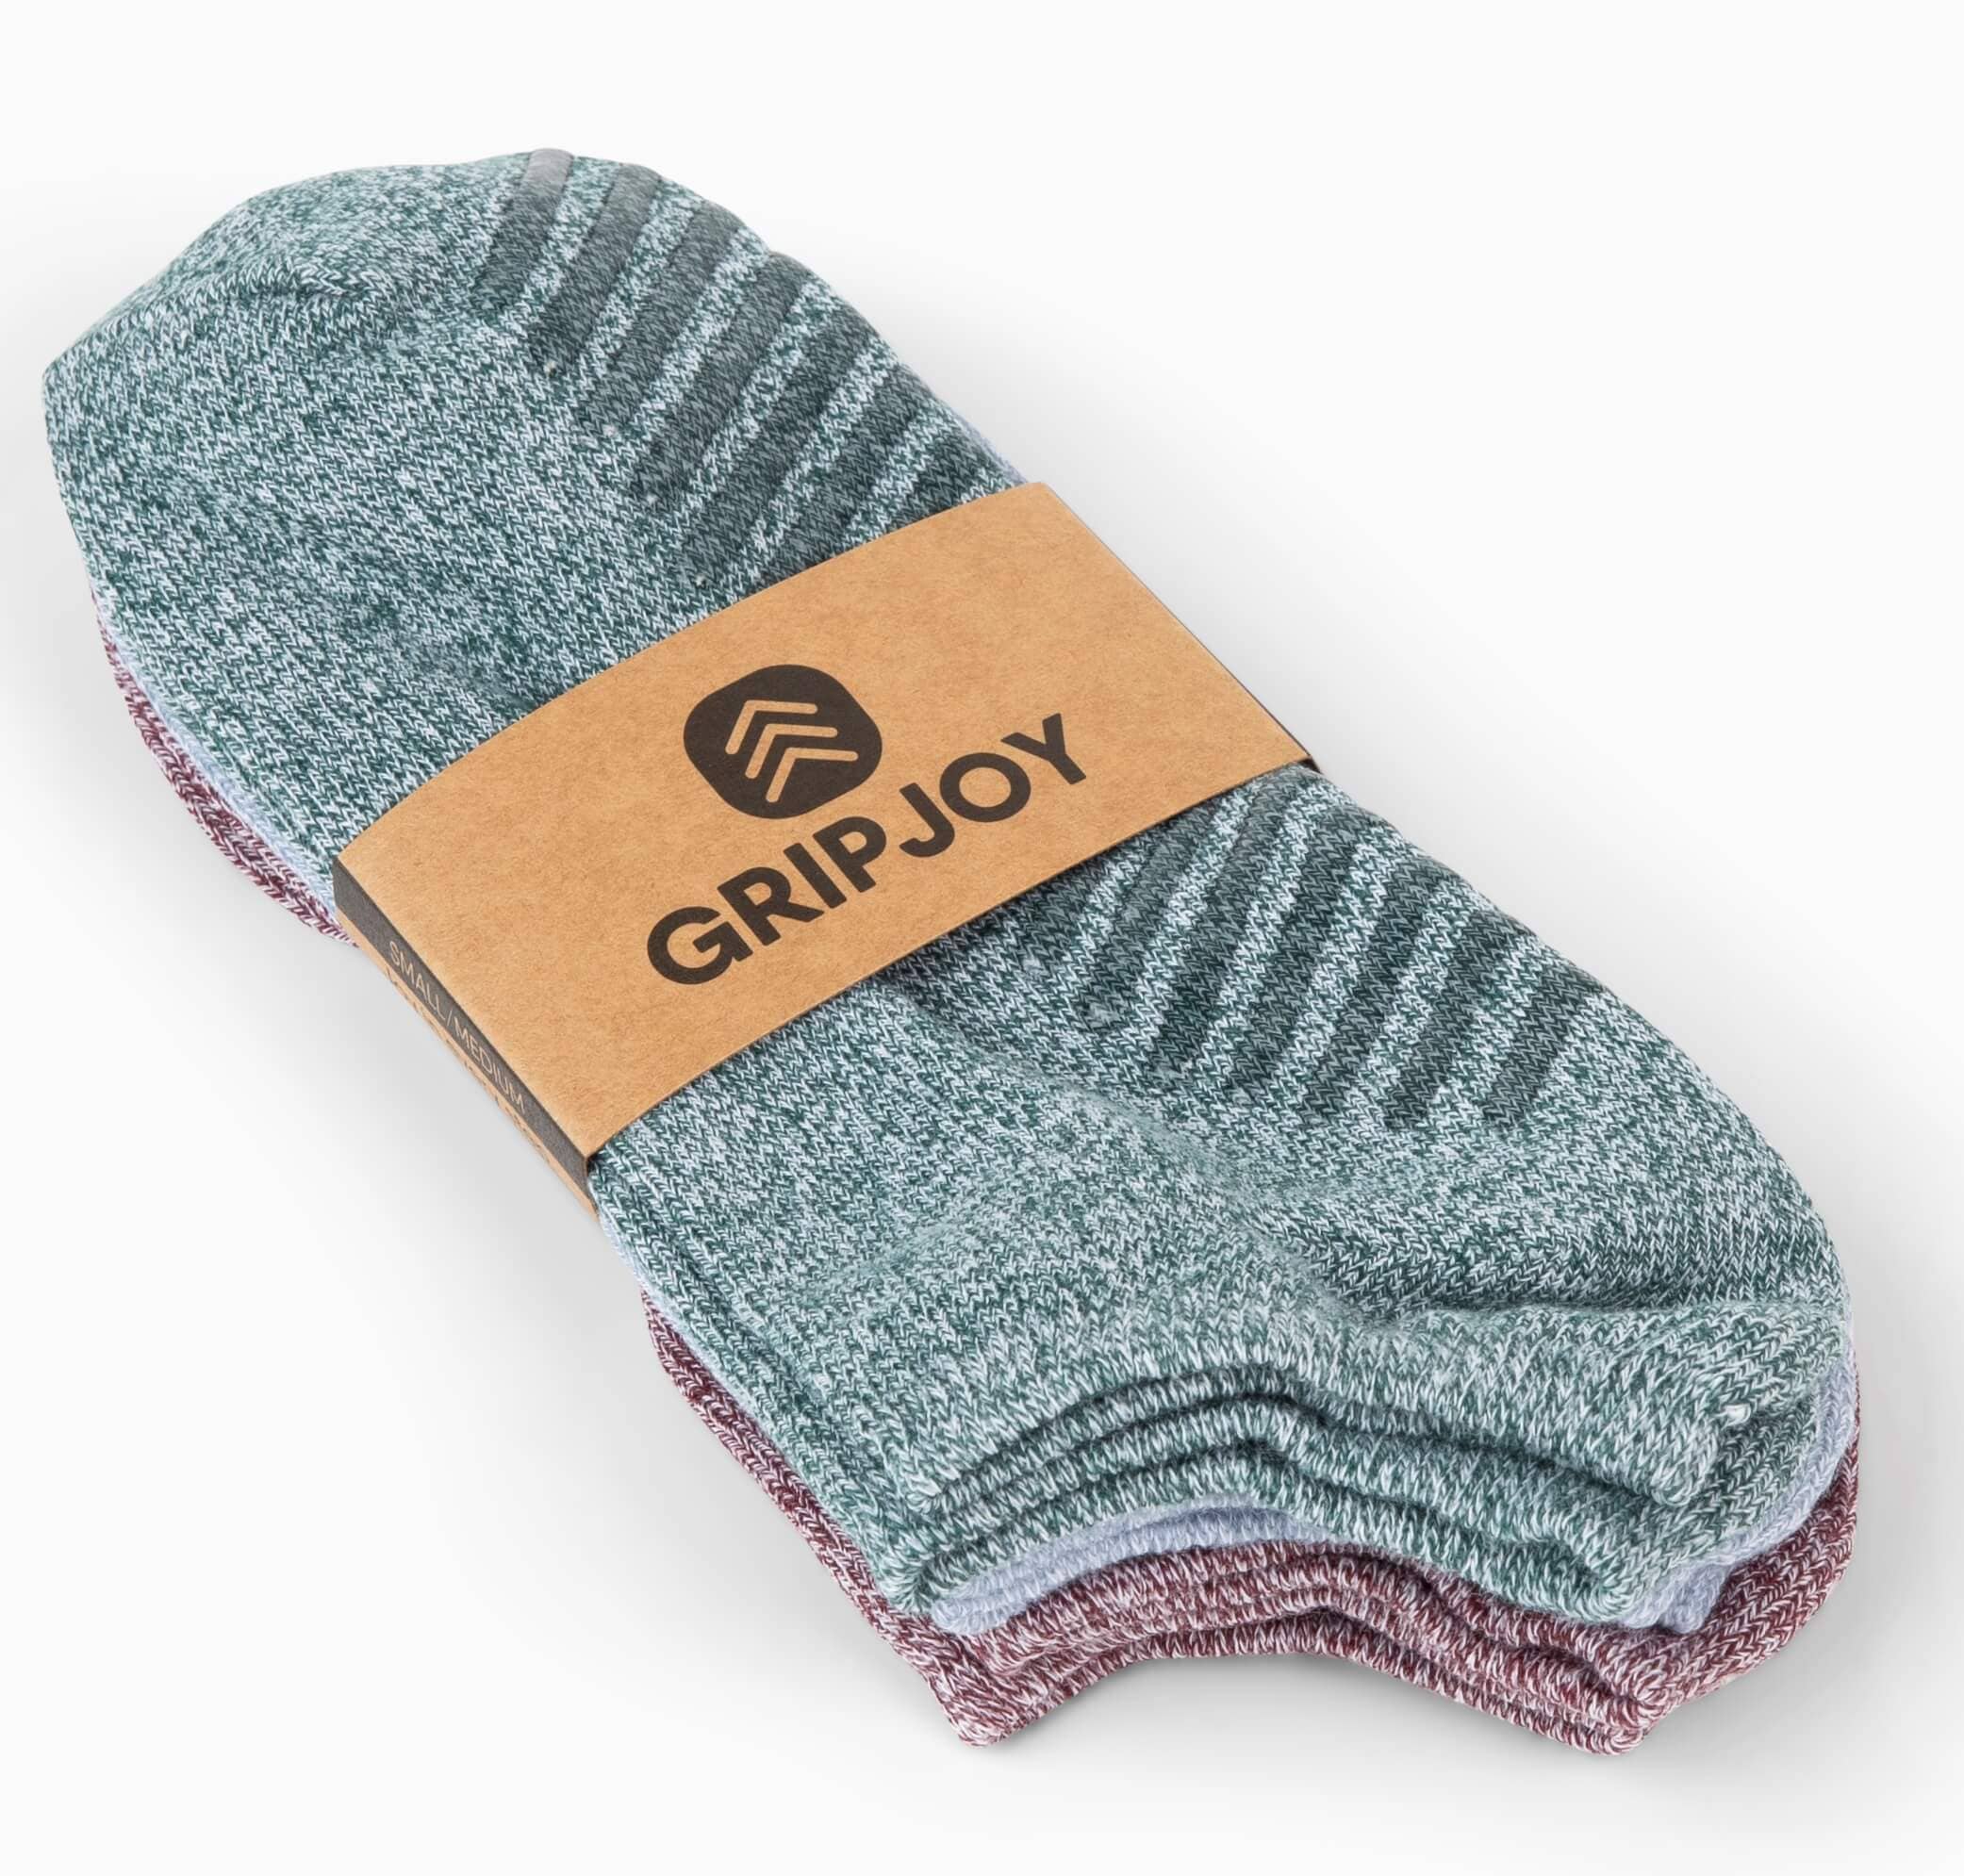 Gripjoy Socks Toddlers & Kids Green, Blue, Maroon Grip Socks - 4 pairs